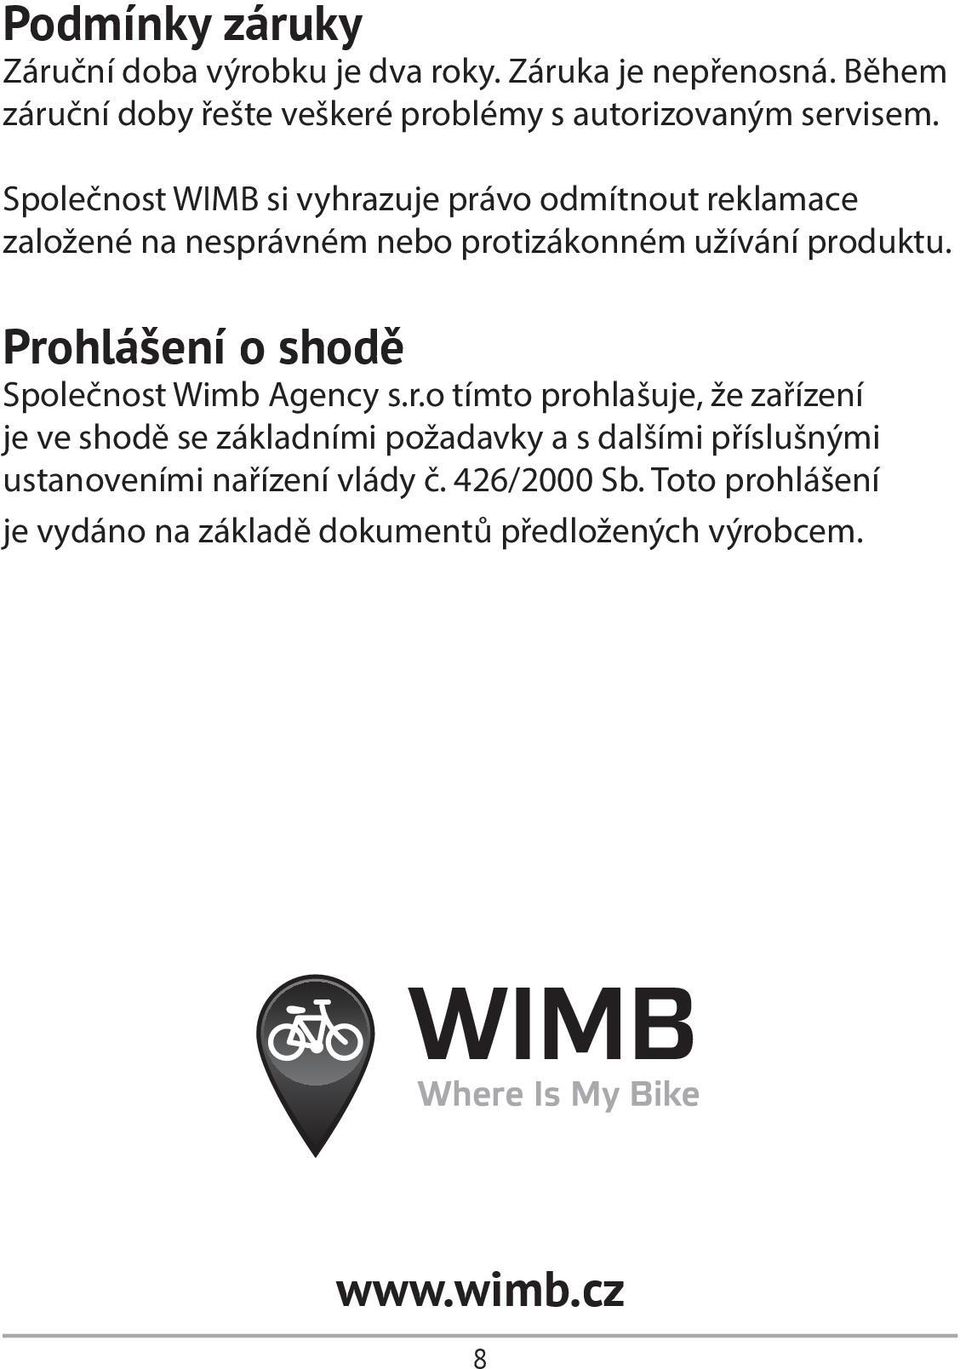 Společnost WIMB si vyhrazuje právo odmítnout reklamace založené na nesprávném nebo protizákonném užívání produktu.